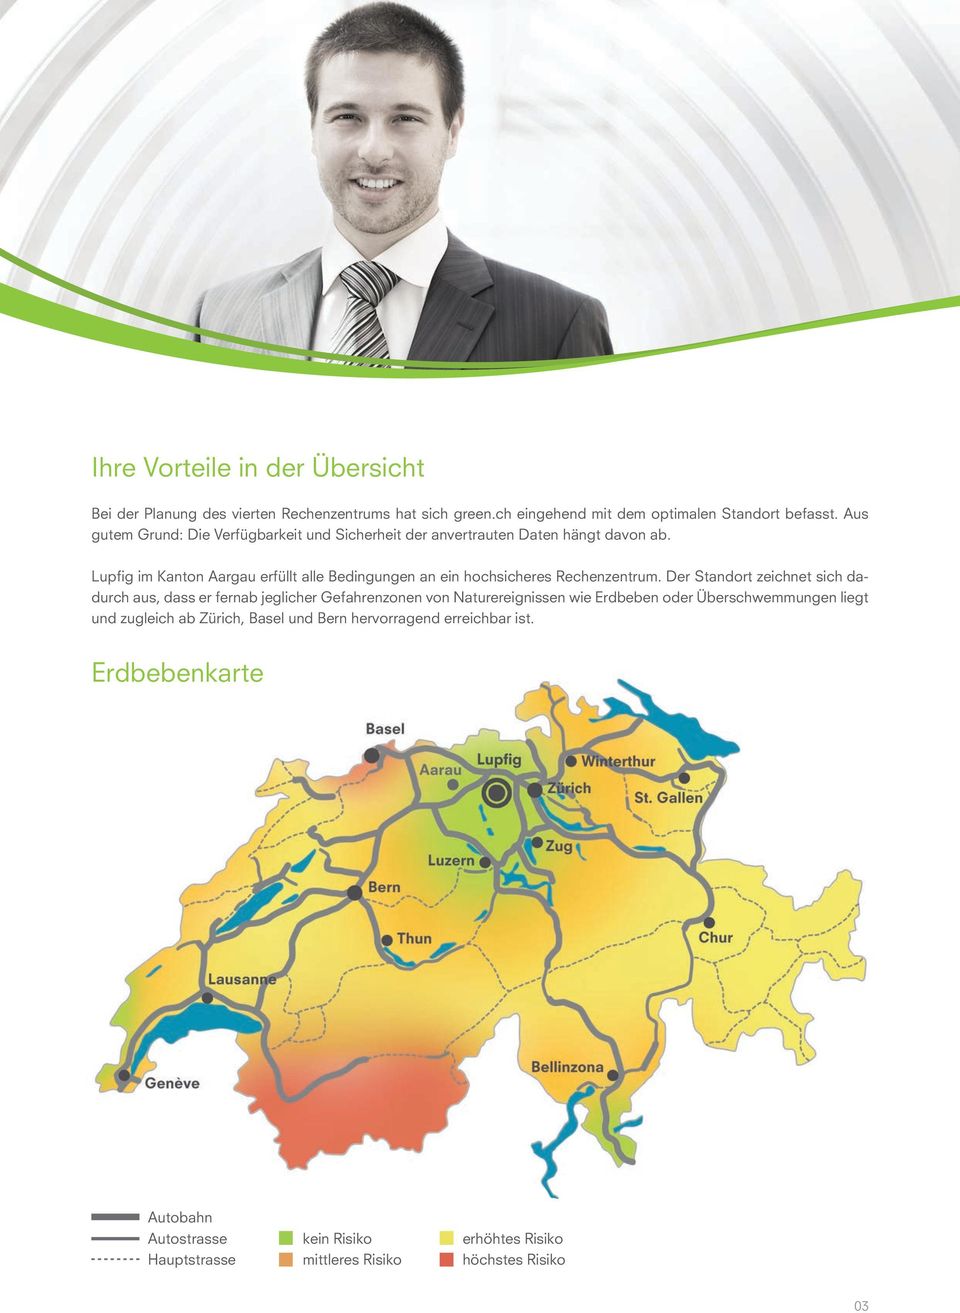 Lupfig im Kanton Aargau erfüllt alle Bedingungen an ein hochsicheres Rechenzentrum.